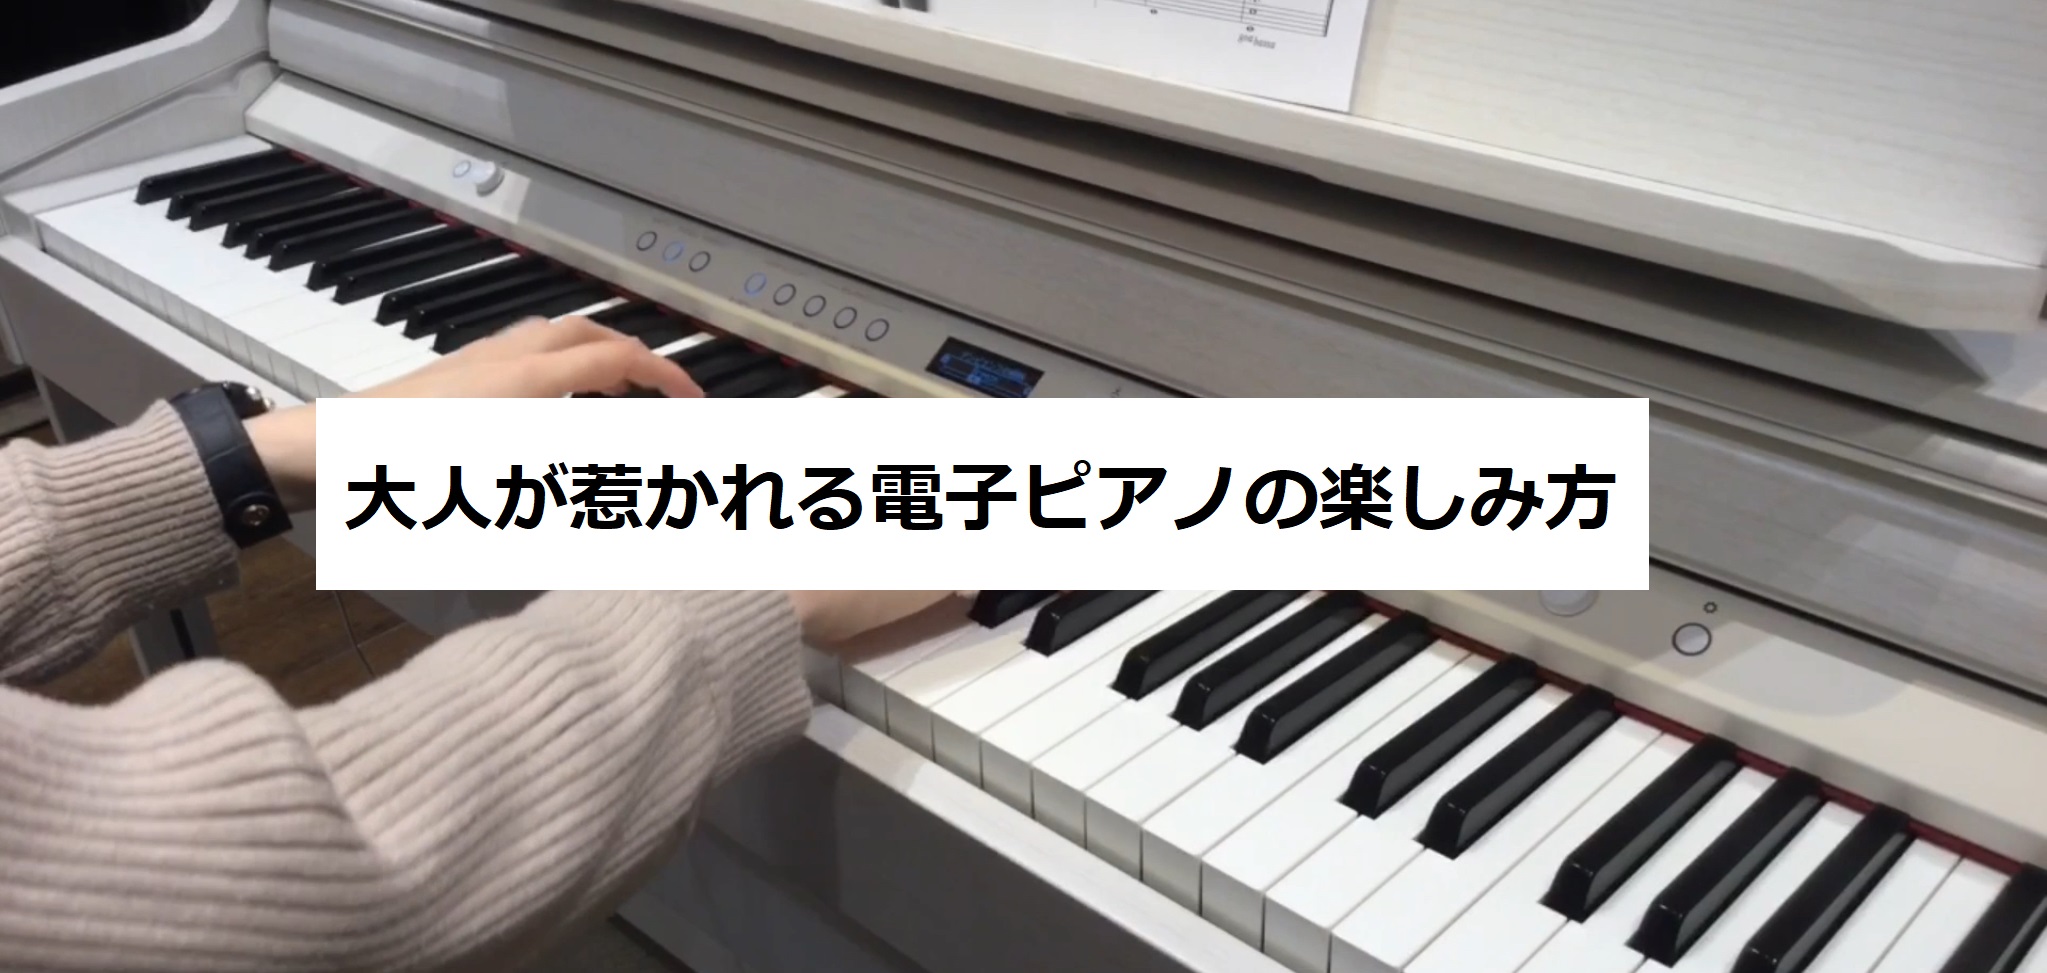 ピアノを趣味で演奏される大人のお客様にとって、大事なのは楽しさではないでしょうか。そう、電子ピアノってとても楽しい楽器なんです。ただ演奏するだけではもったいない！電子ピアノだからこそできる楽しみ方を、Roland LX706GPを使って演奏動画と合わせてご紹介させていただきます。 *ピアノを弾く場所 […]